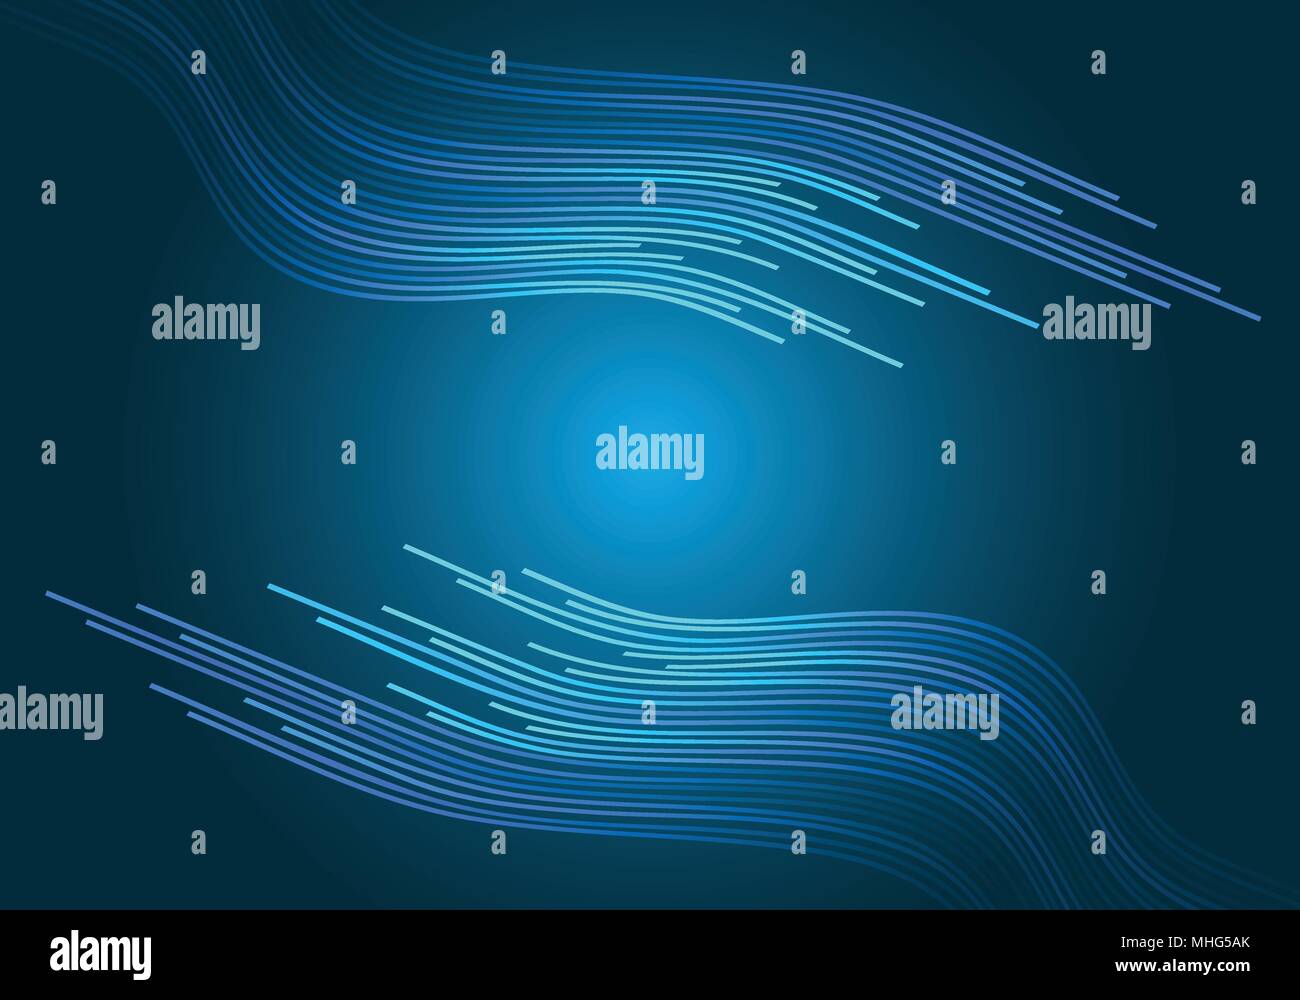 Abstrakt Blau light line Kurve auf schwarzem Design moderne futuristischen Hintergrund Vector Illustration. Stock Vektor